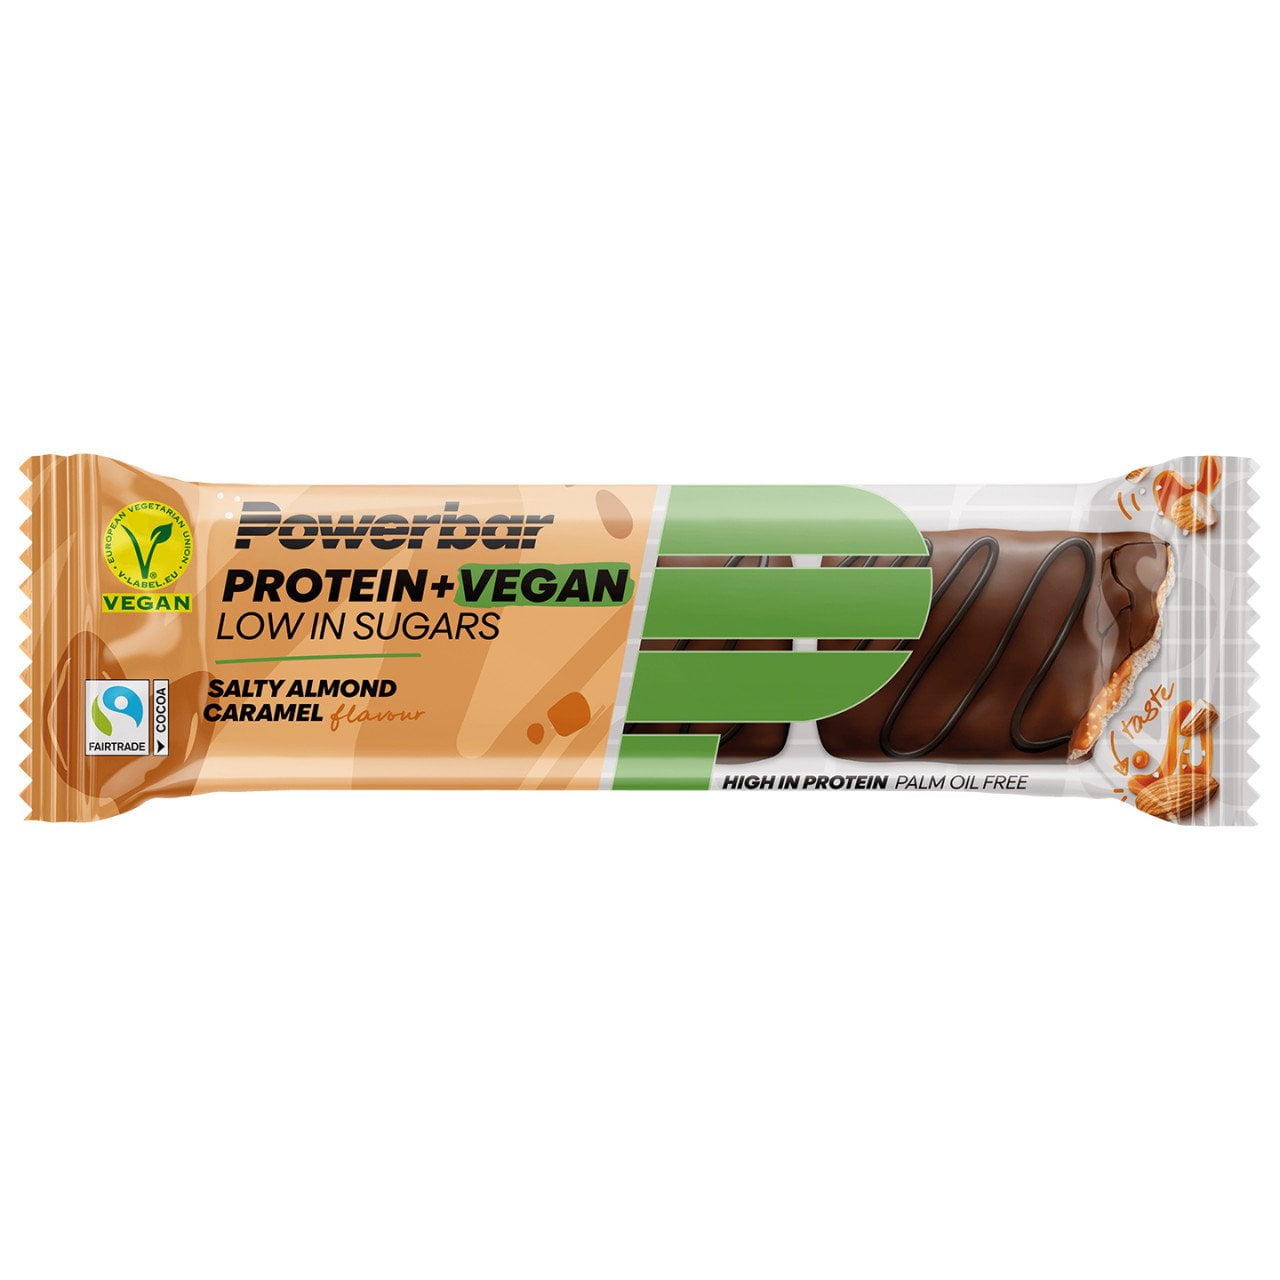 Proteine+ vegane a basso contenuto di zuccheri Caramello salato alle mandorle 12 St.